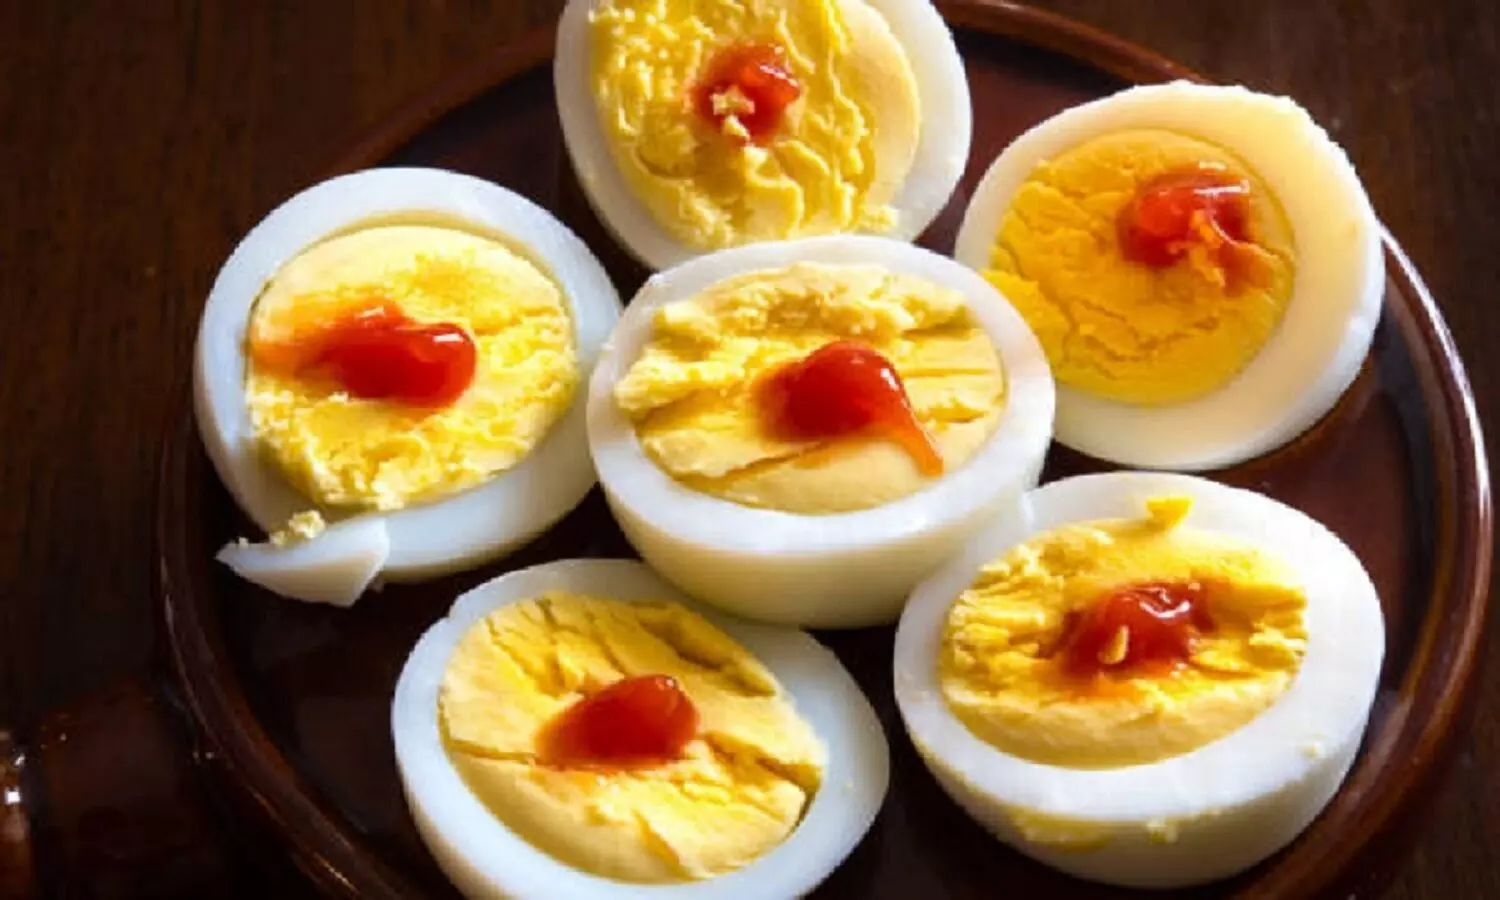 Egg Side Effects: किसी भी समय अंडा खाने की आदत है तो संभल जाइए, फायदेमंद है पर कर सकता है नुकसान